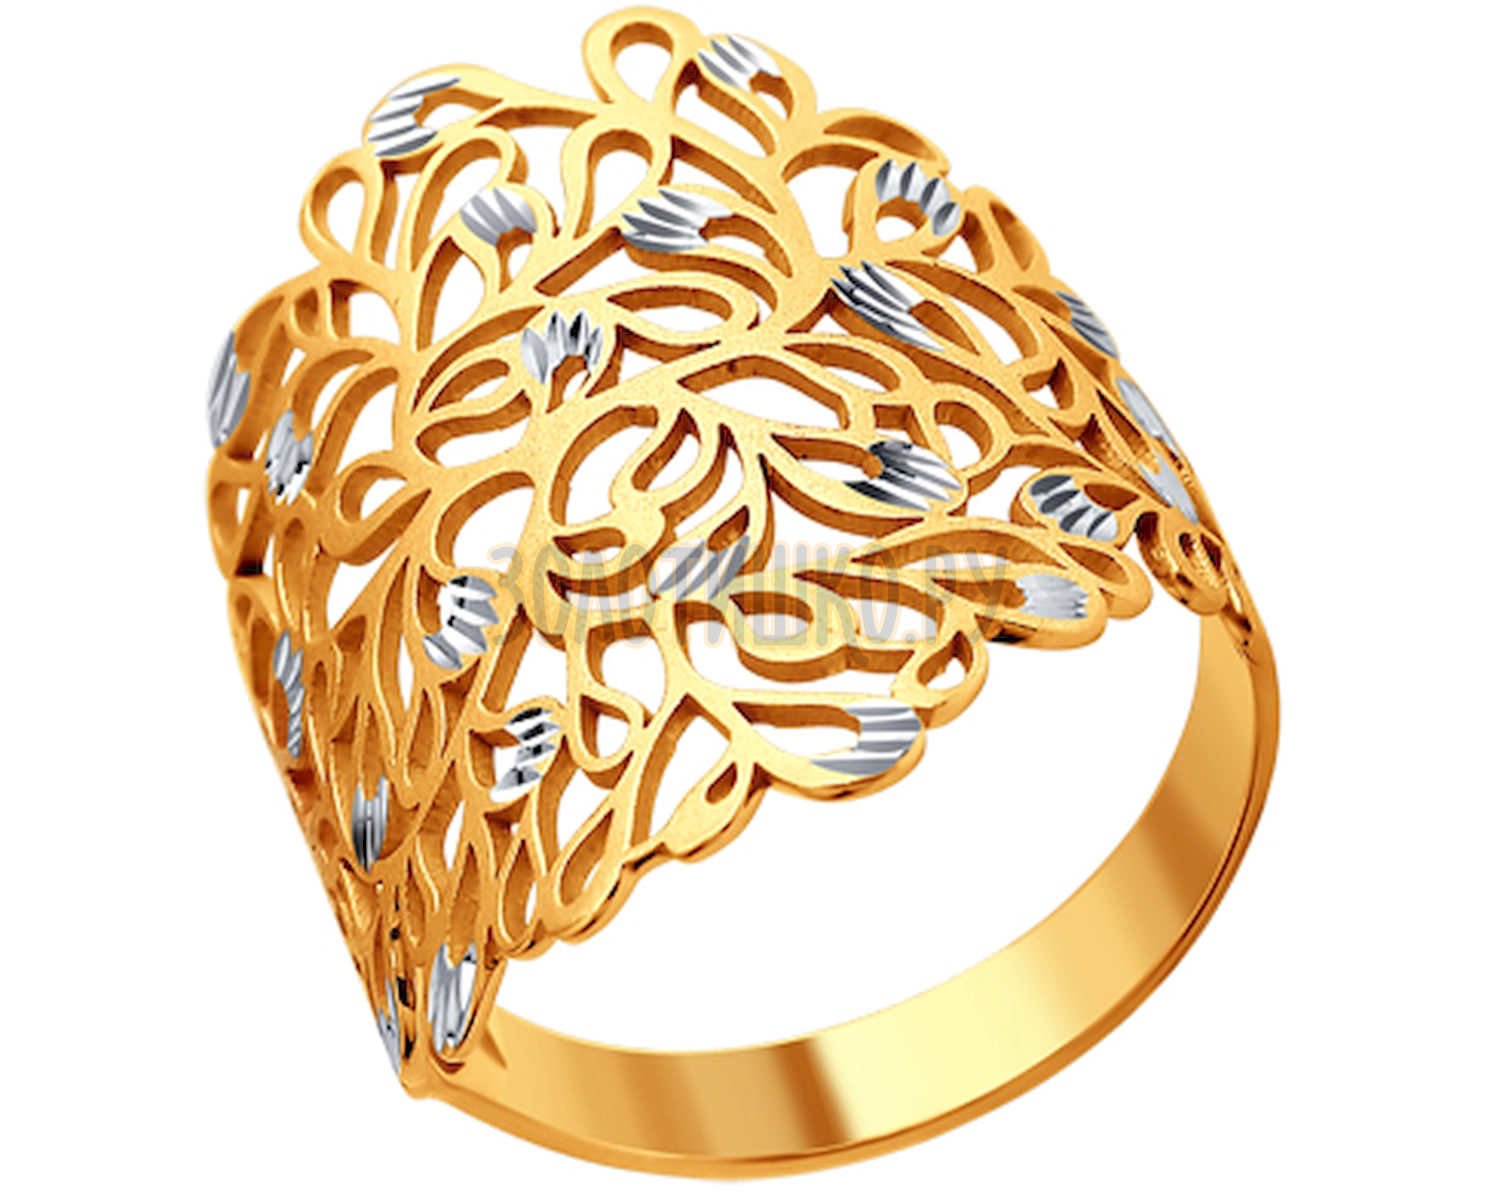 Золотое кольцо лист. SOKOLOV кольцо «Лис» 93010668. Золотые кольца 585 без камней. Золотые ажурные кольца в золото 585. Золотые кольца женские без камней из золота 585.